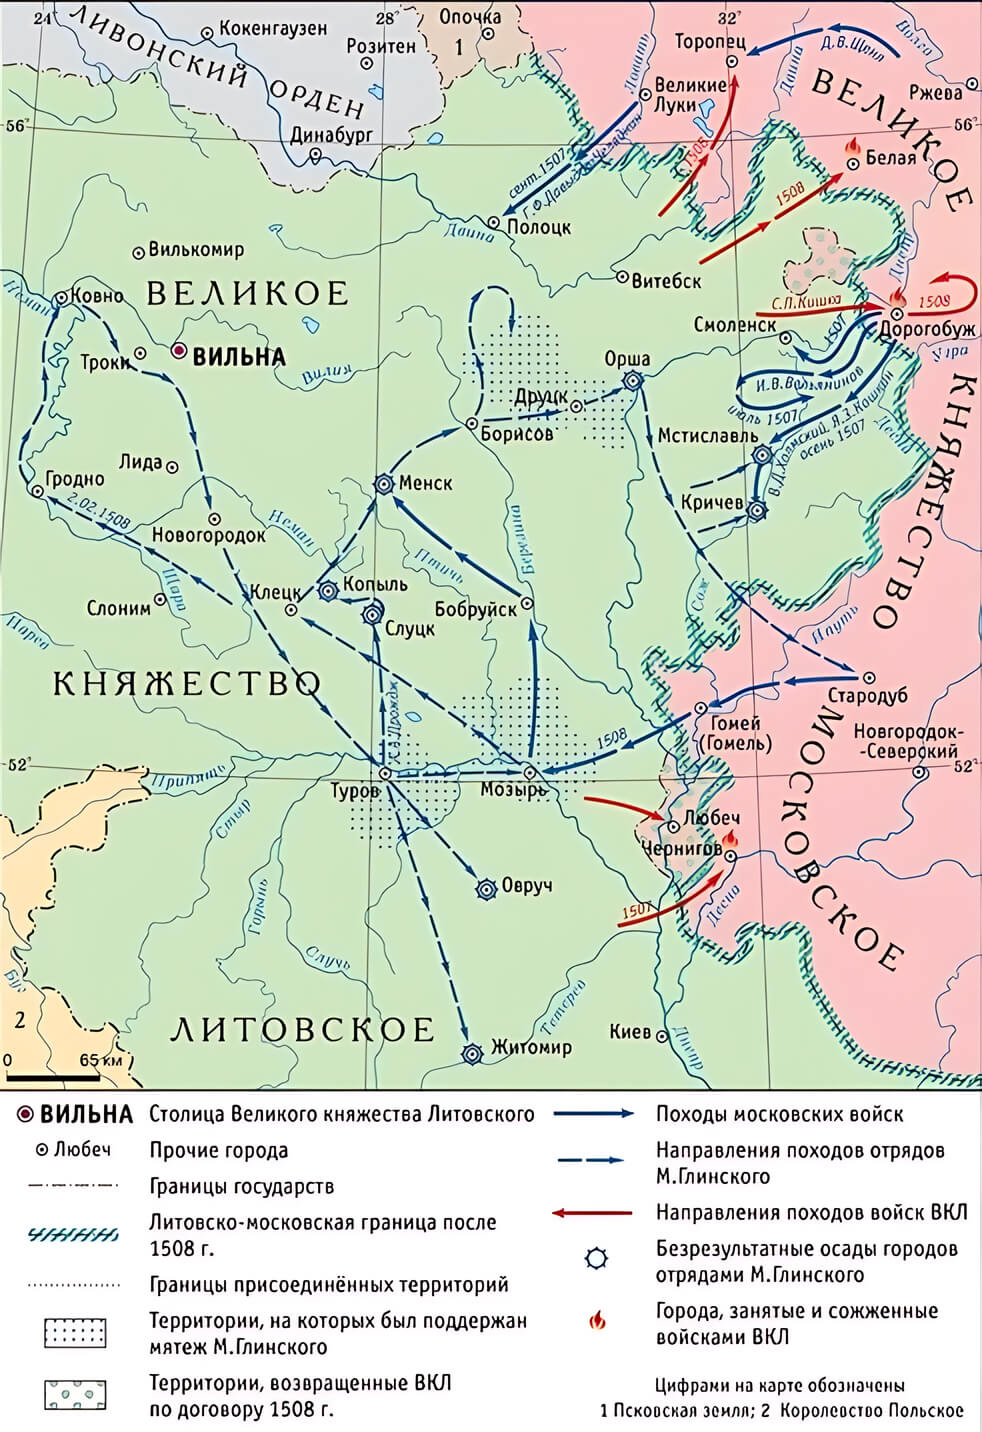 Карта боевых действий во время Русско-литовской войны 1507-1508г.